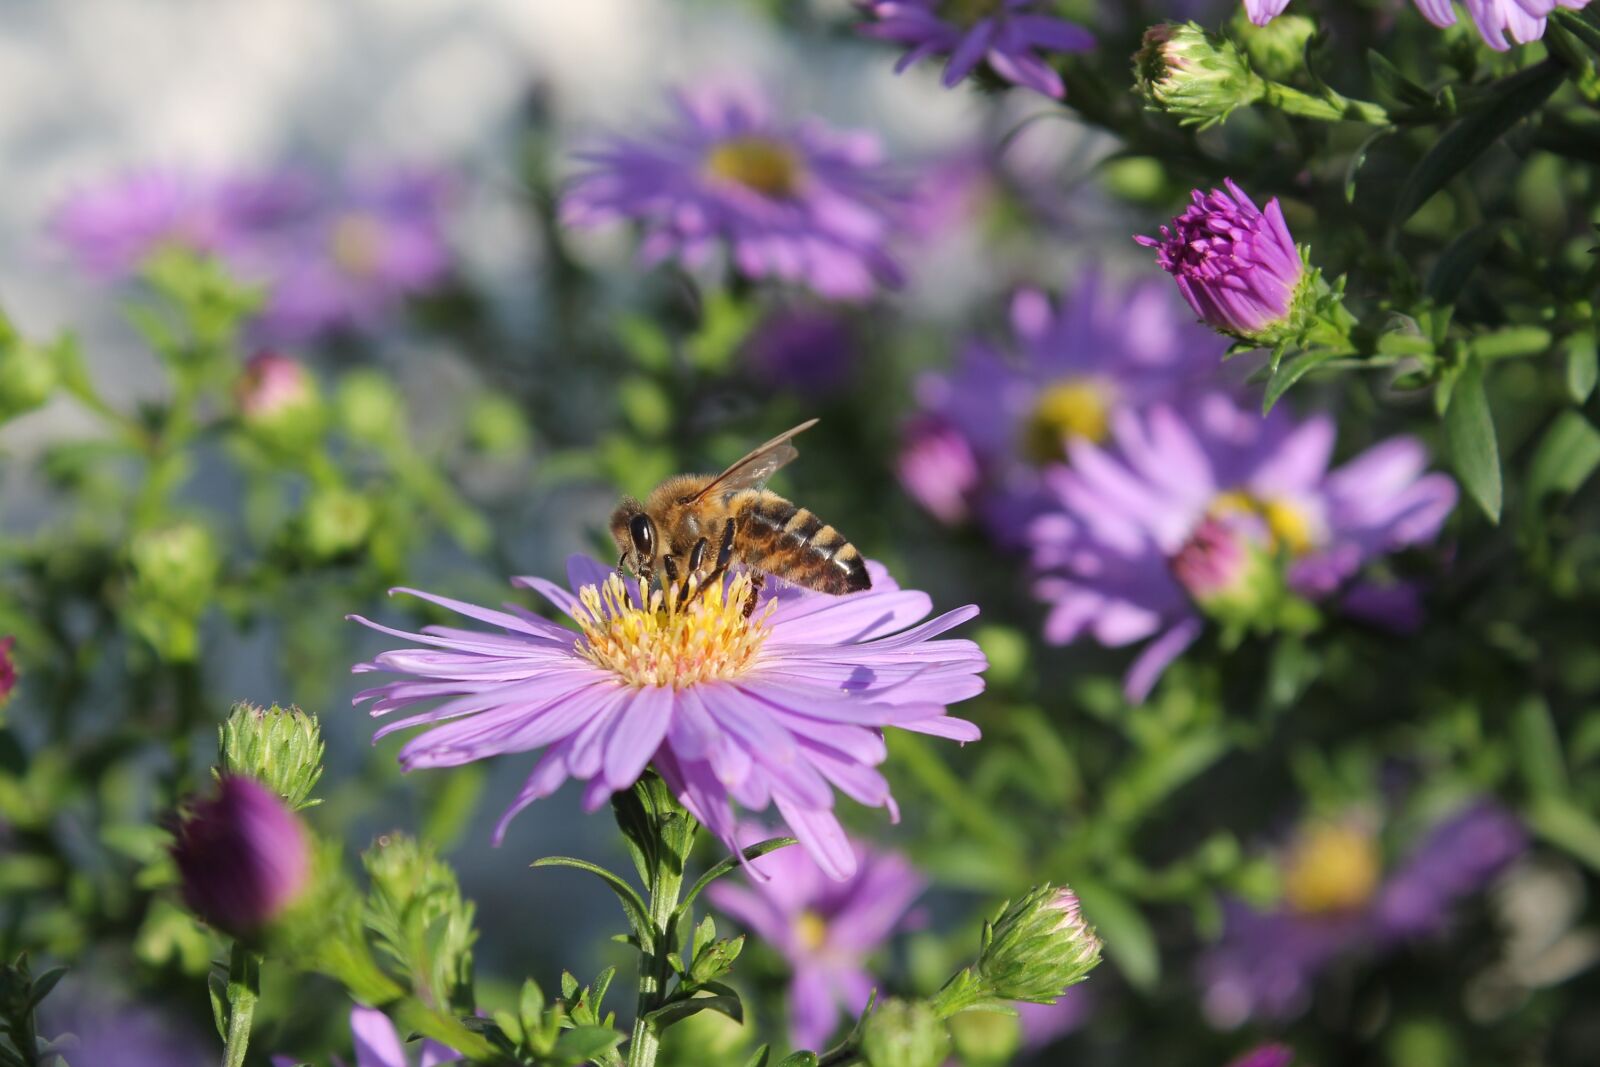 Canon EOS 1100D (EOS Rebel T3 / EOS Kiss X50) sample photo. Herbstaster, bee, garden photography